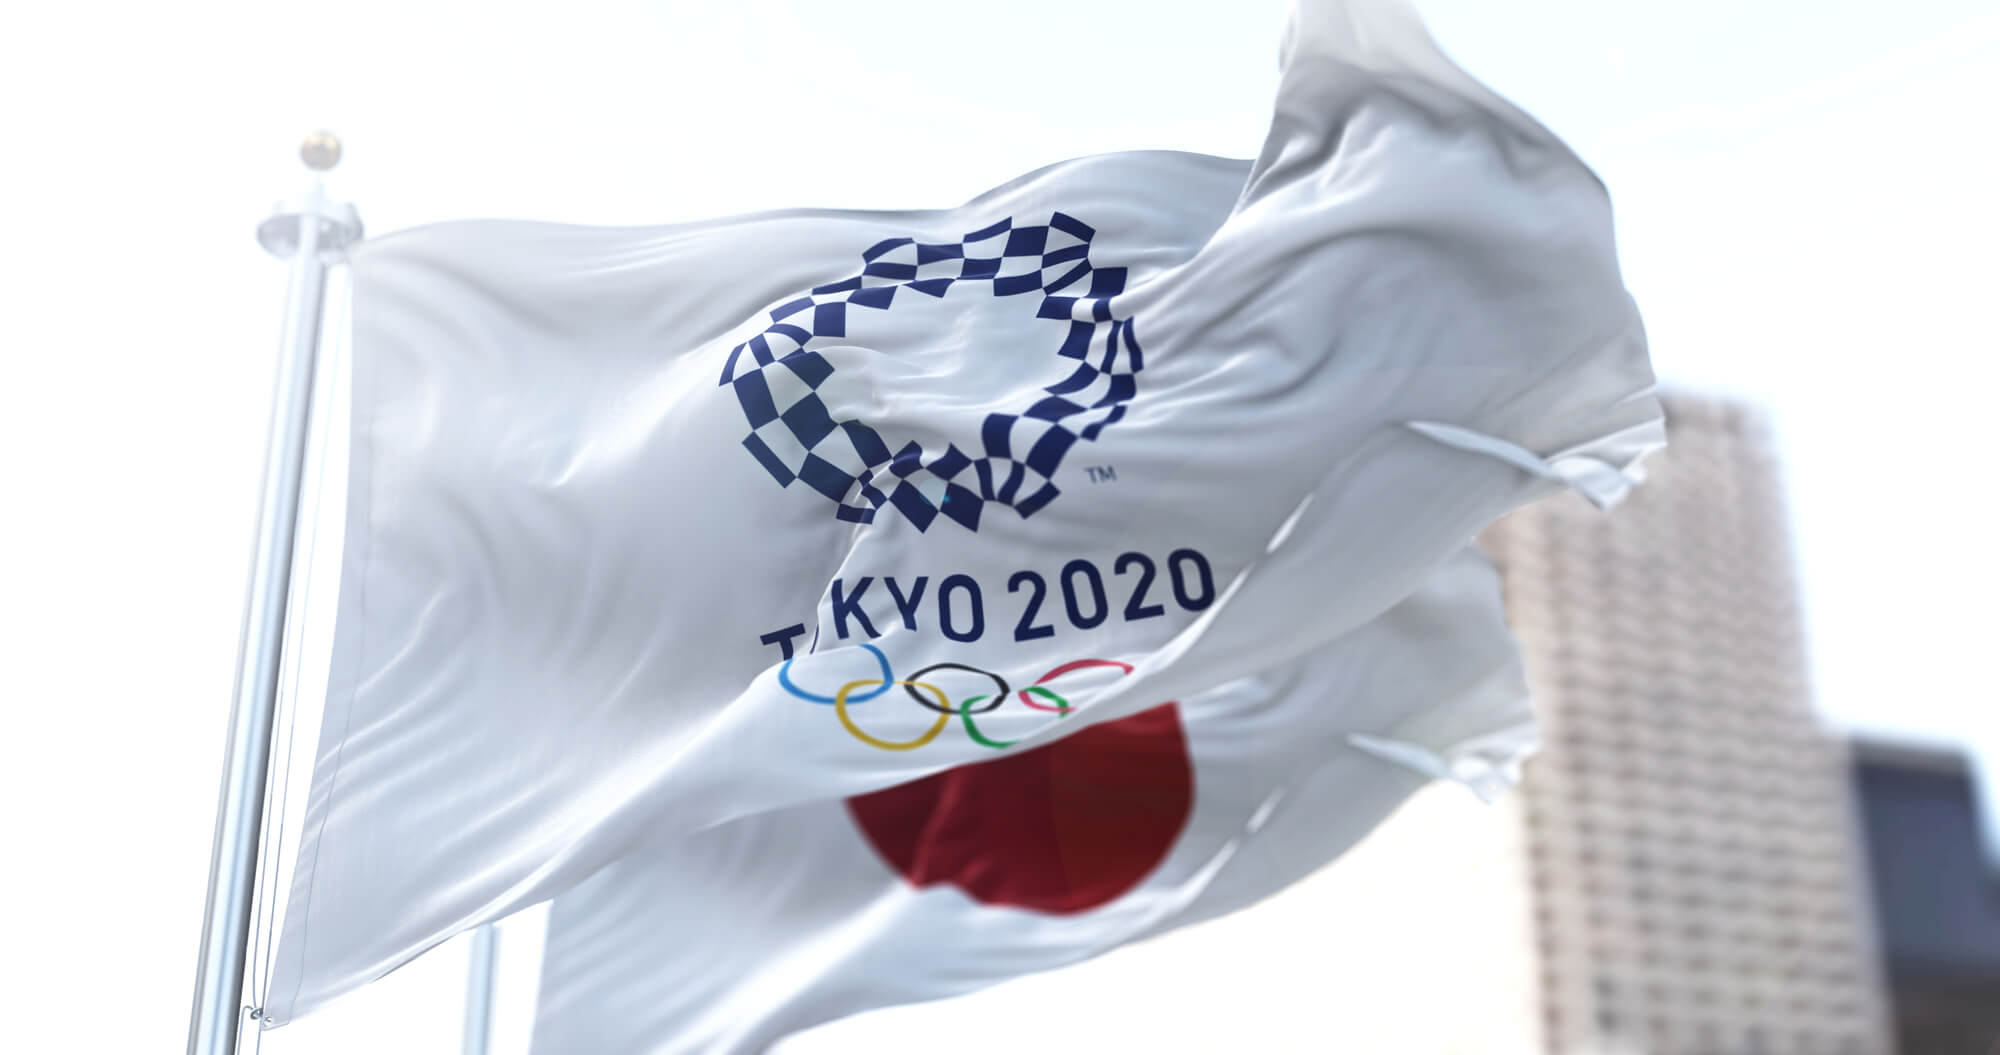 אולימפיאדת טוקיו 2020. <a href="https://depositphotos.com. ">המחשה: depositphotos.com</a>